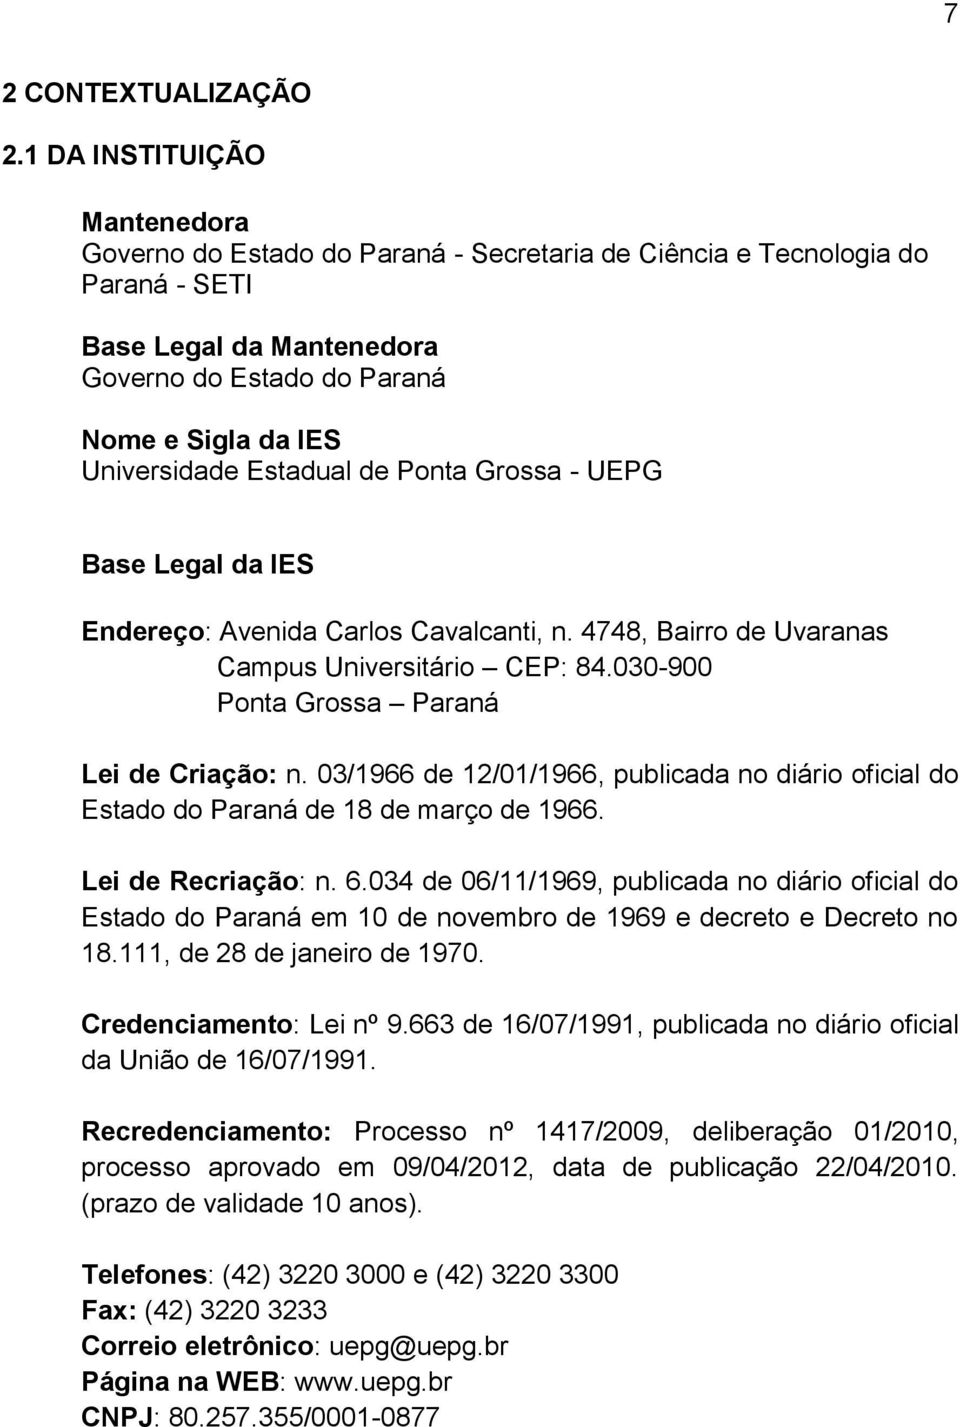 Estadual de Ponta Grossa - UEPG Base Legal da IES Endereço: Avenida Carlos Cavalcanti, n. 4748, Bairro de Uvaranas Campus Universitário CEP: 84.030-900 Ponta Grossa Paraná Lei de Criação: n.